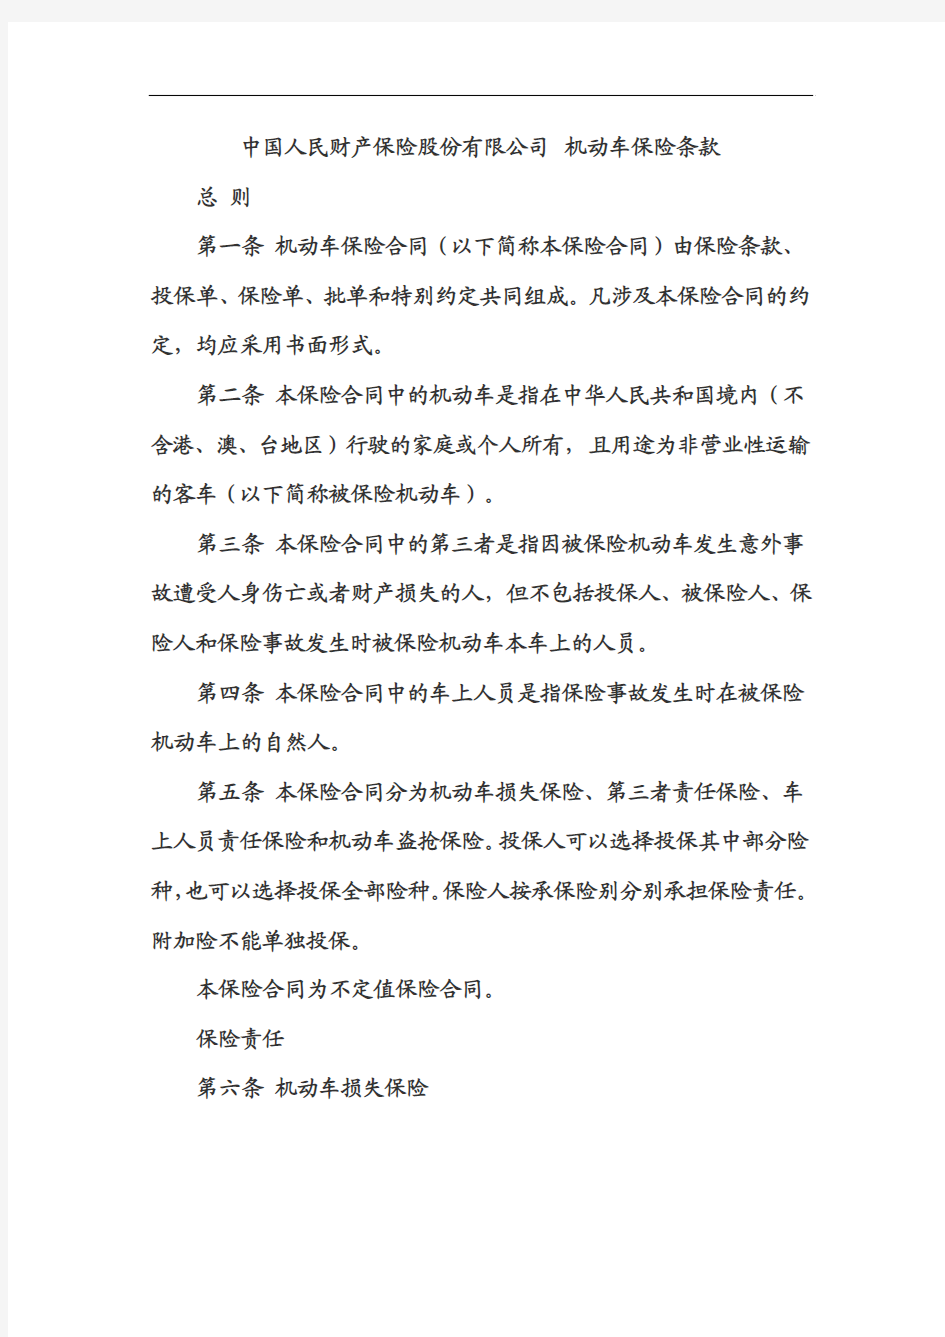 中国人民财产保险股份有限公司 机动车保险条款